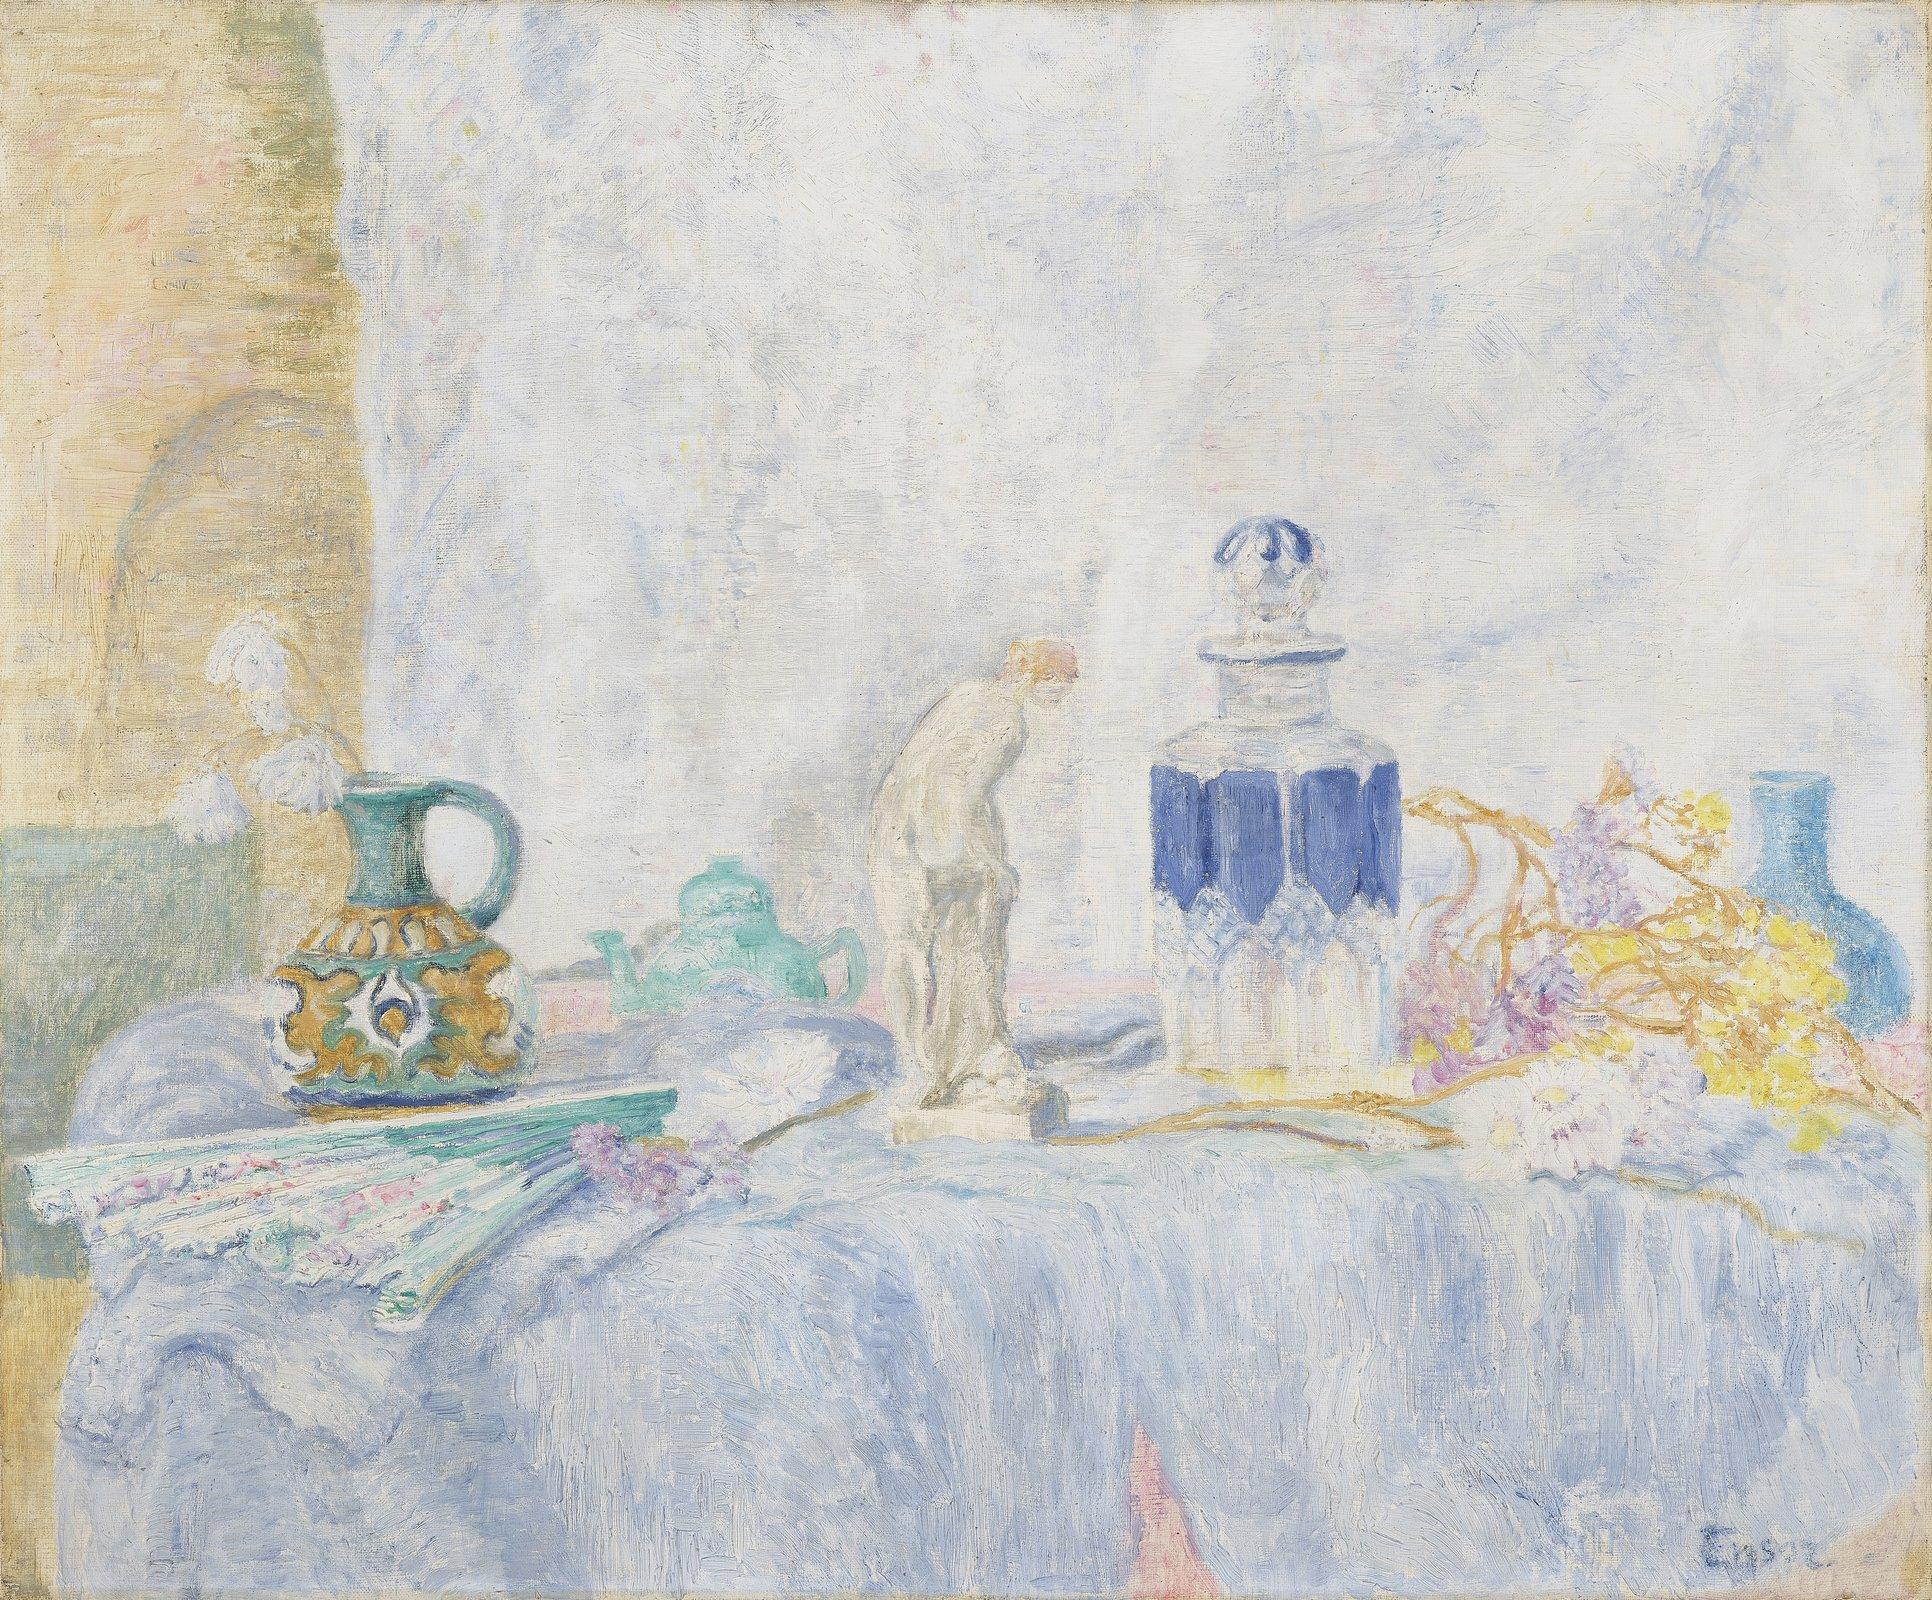 James Ensor, Nature morte au tanagra et au flacon (Le petit tanagra), 1912, Huile sur toile, 55 x 65 cm. Cette œuvre issue d'une dation anonyme rejoint les collections du MCBA. [MCBA]